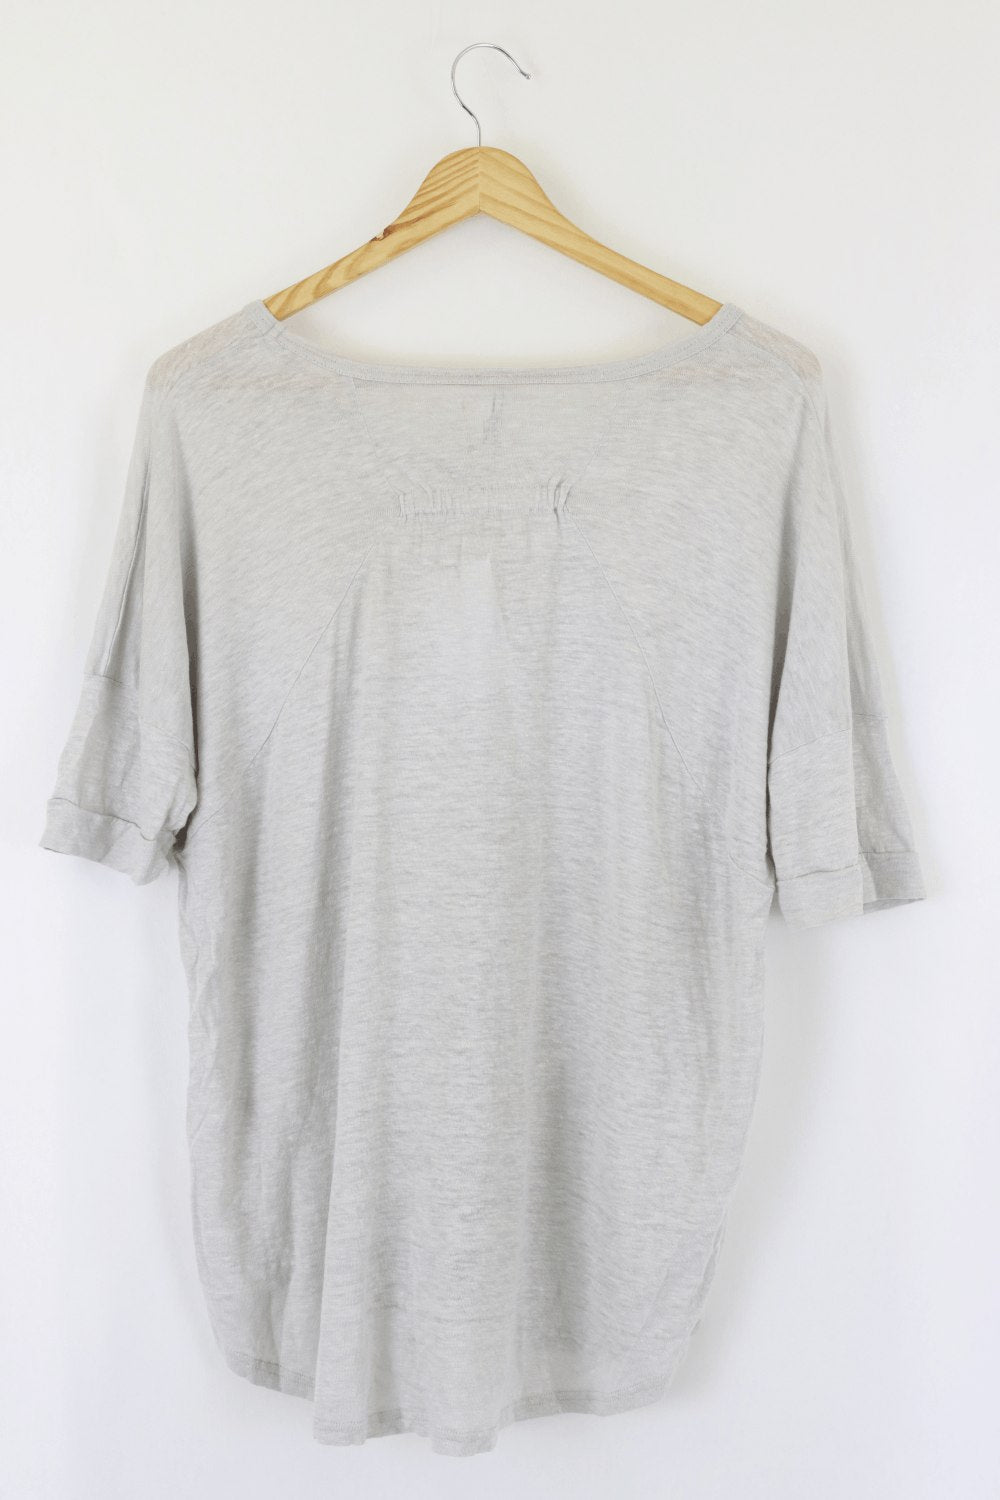 M A Dainty Grey T-shirt 10